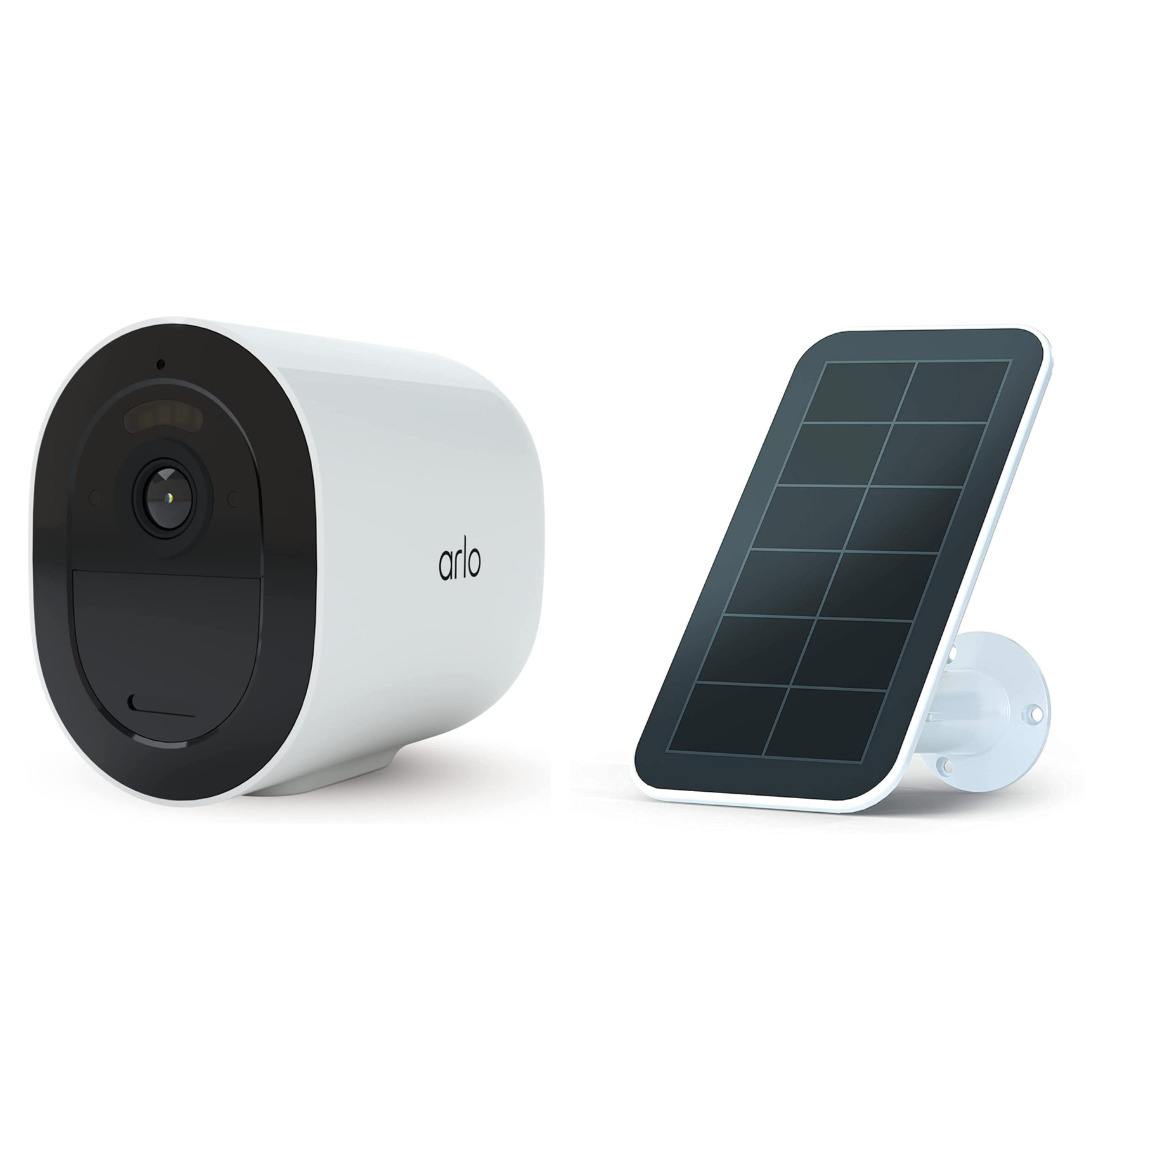 Arlo Go 2 – Smarte LTE-Überwachungskamera + gratis Solar Panel – Deal, Schnäppchen, sparen